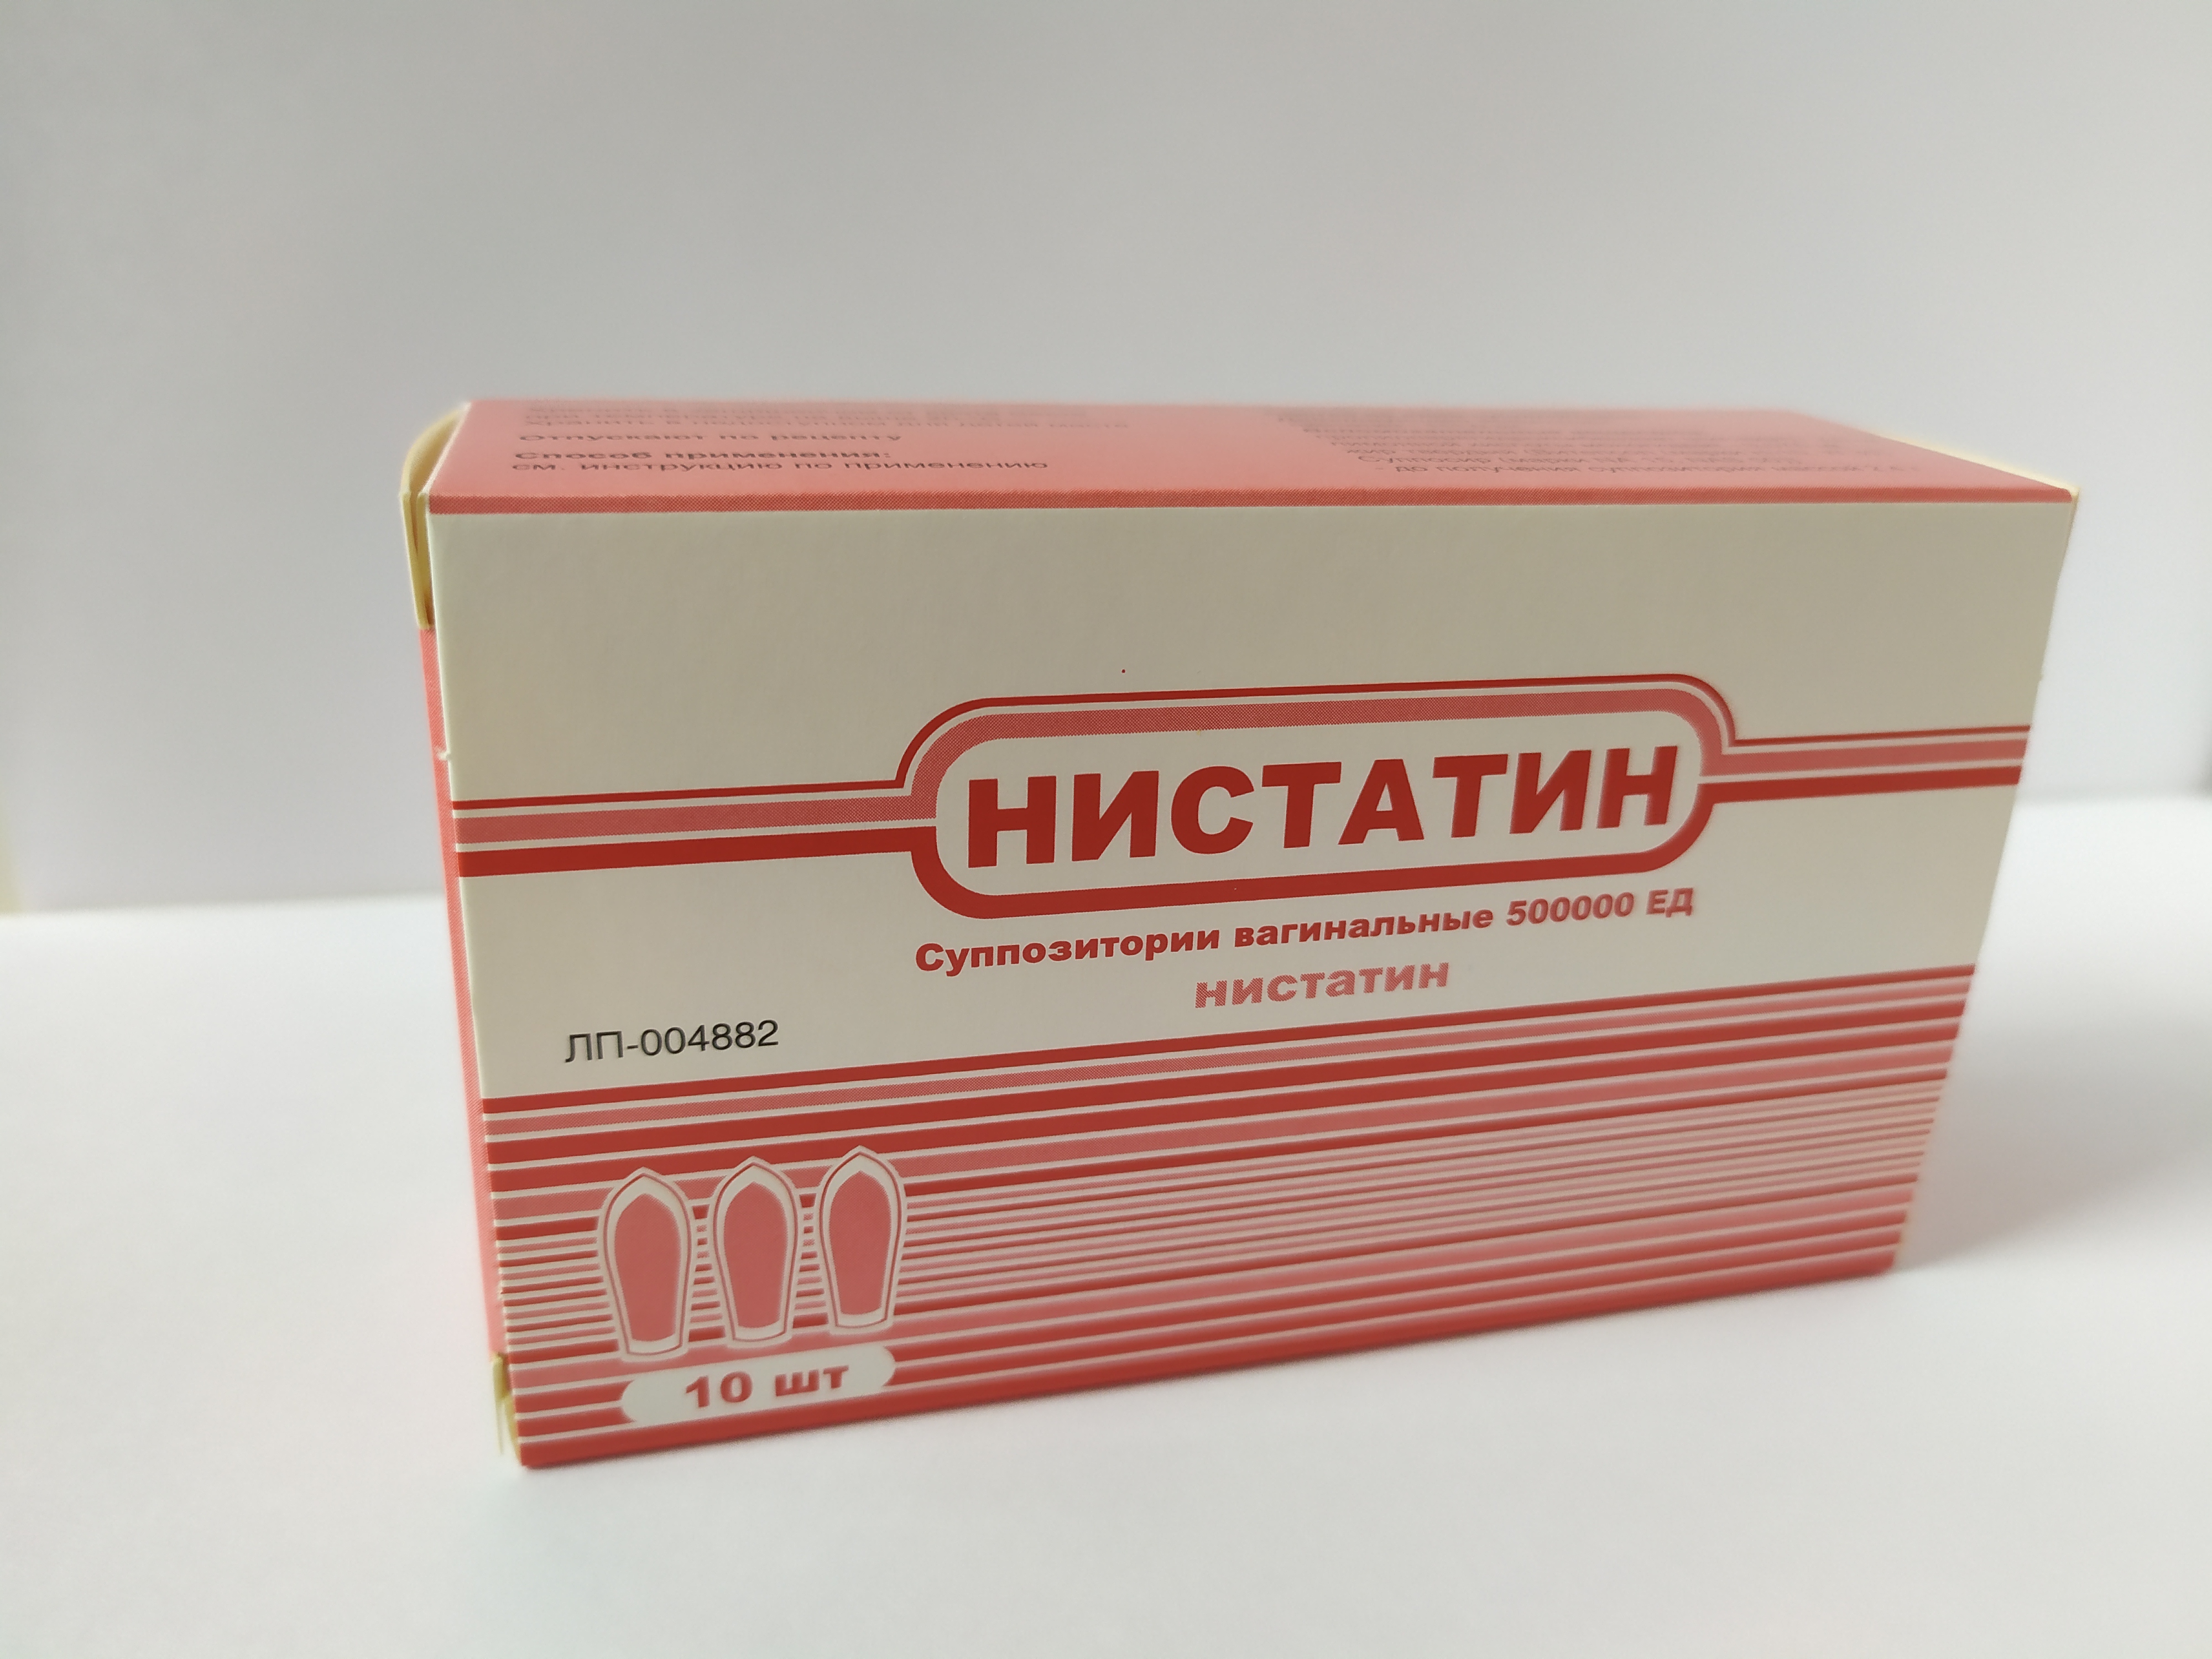 Нистатиновые ваг.супп 500тЕД № 10 (Тульская ФФ)